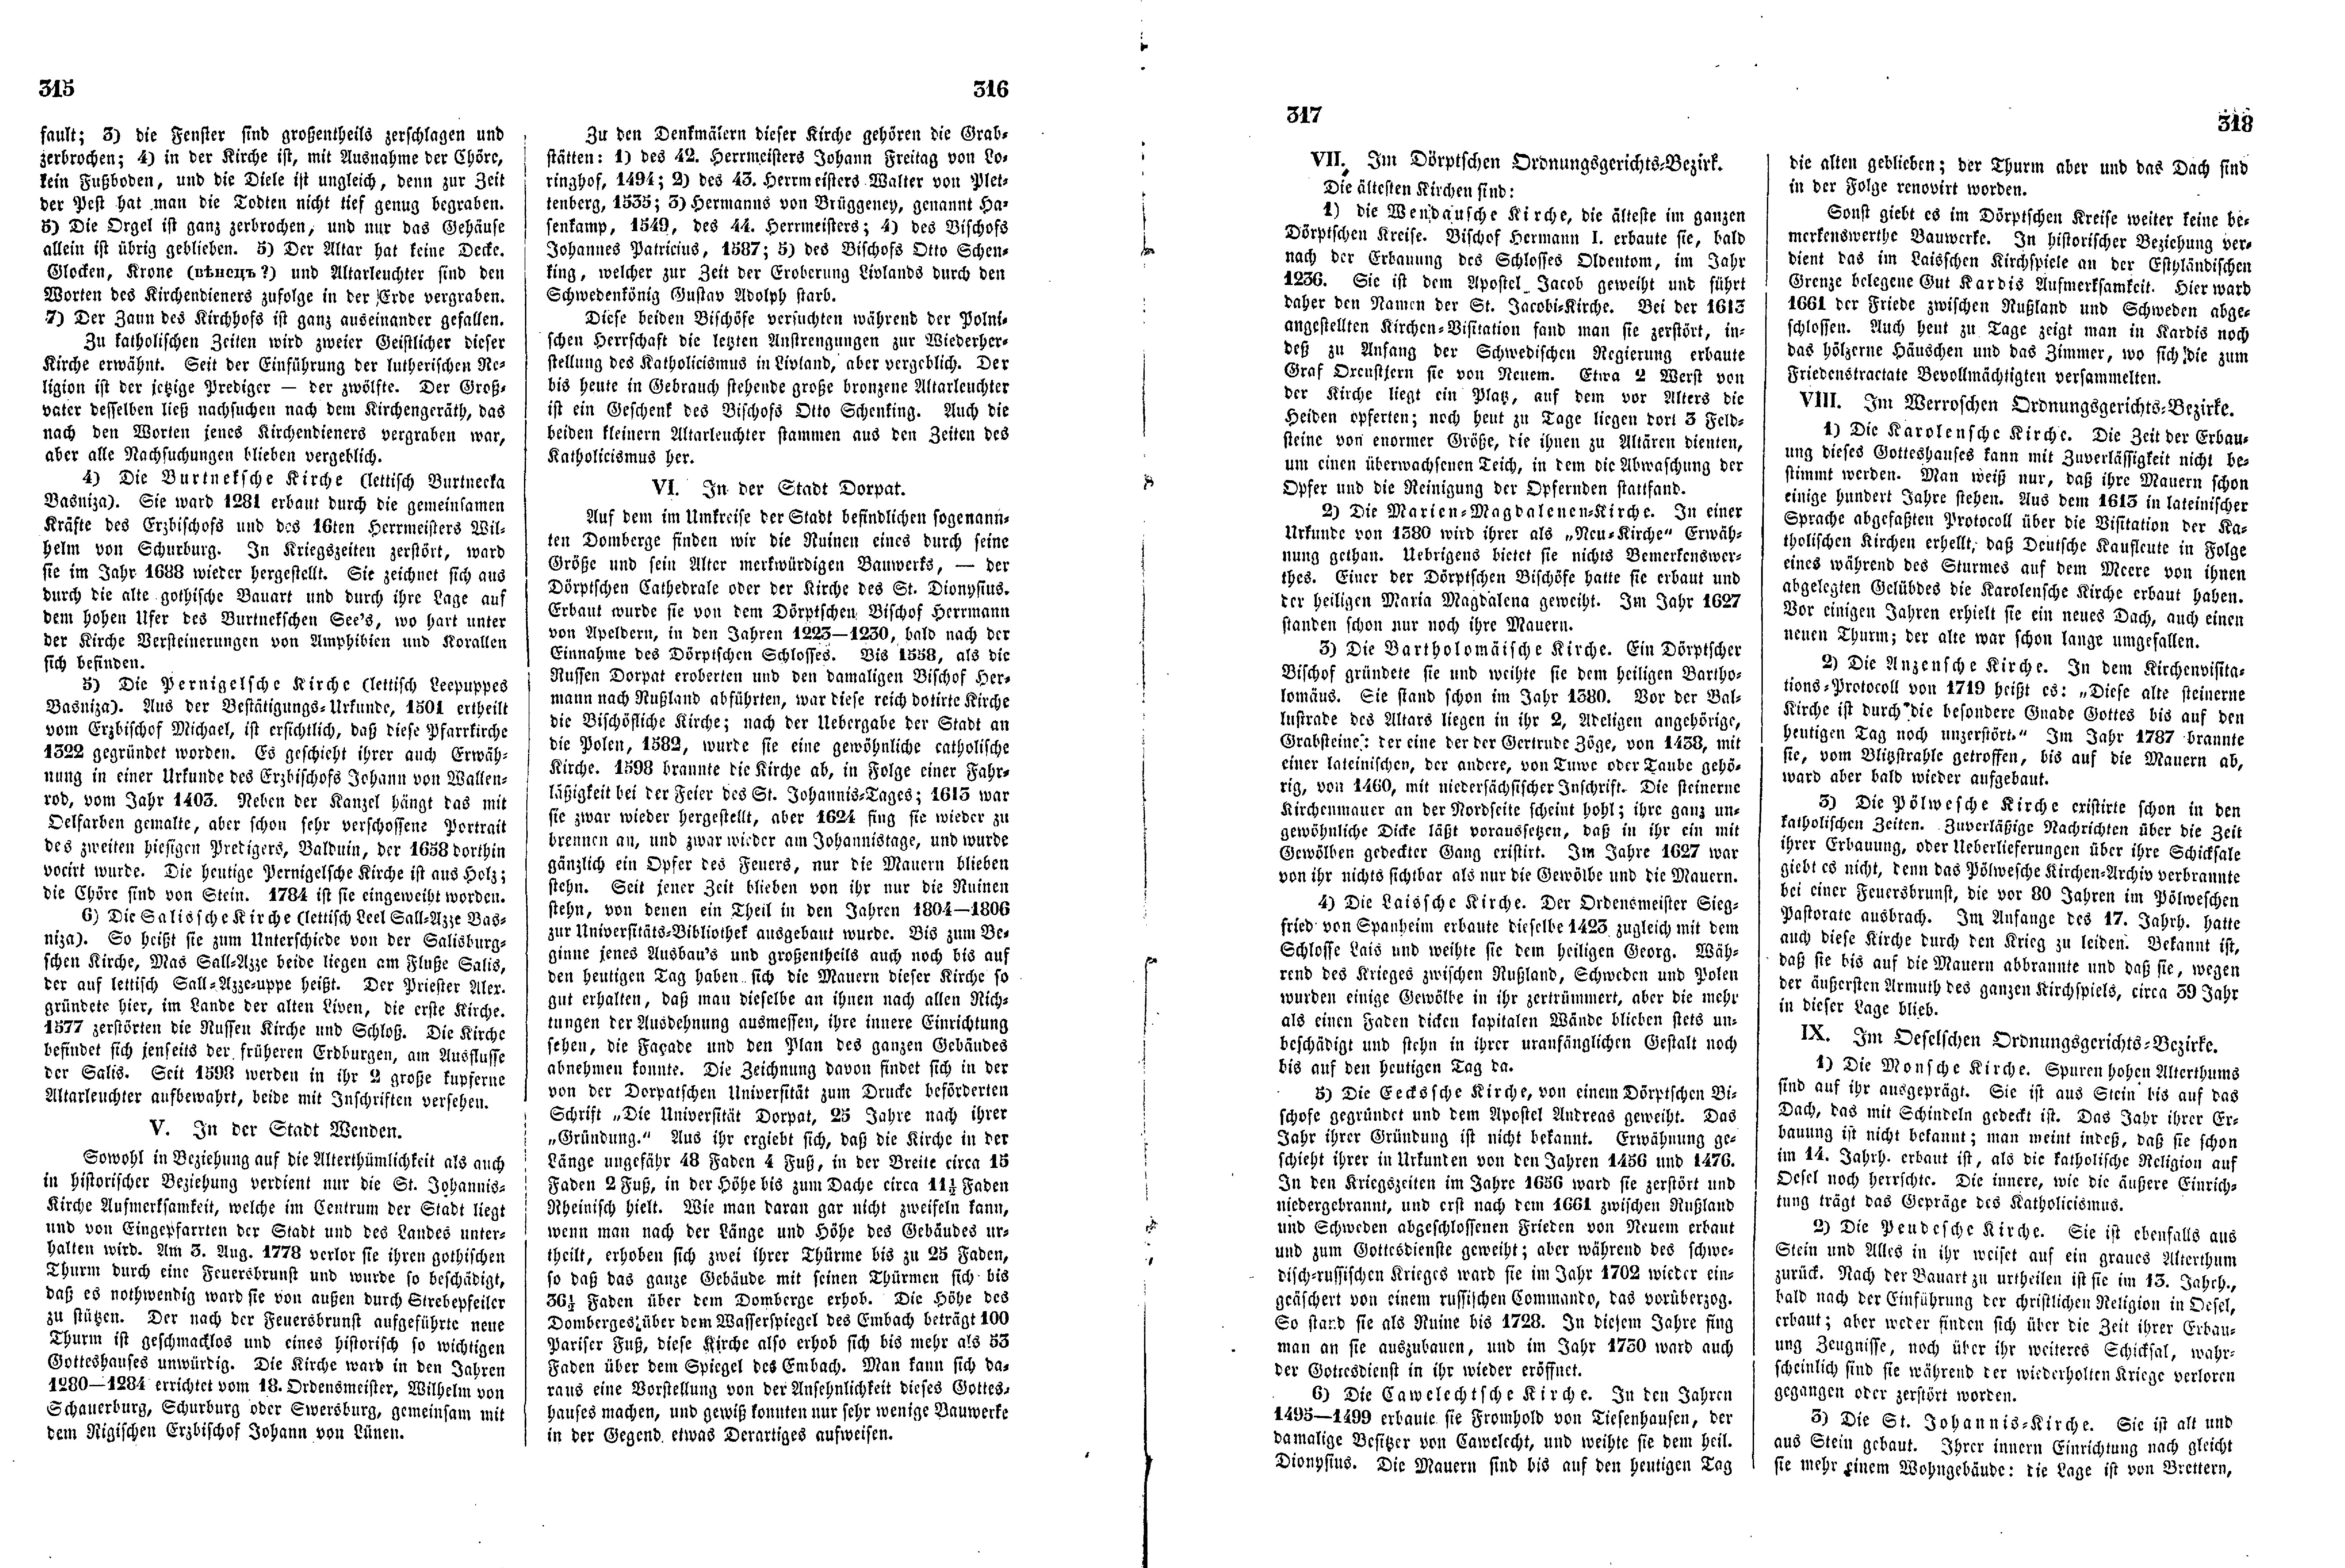 Das Inland [12] (1847) | 84. (315-318) Haupttext